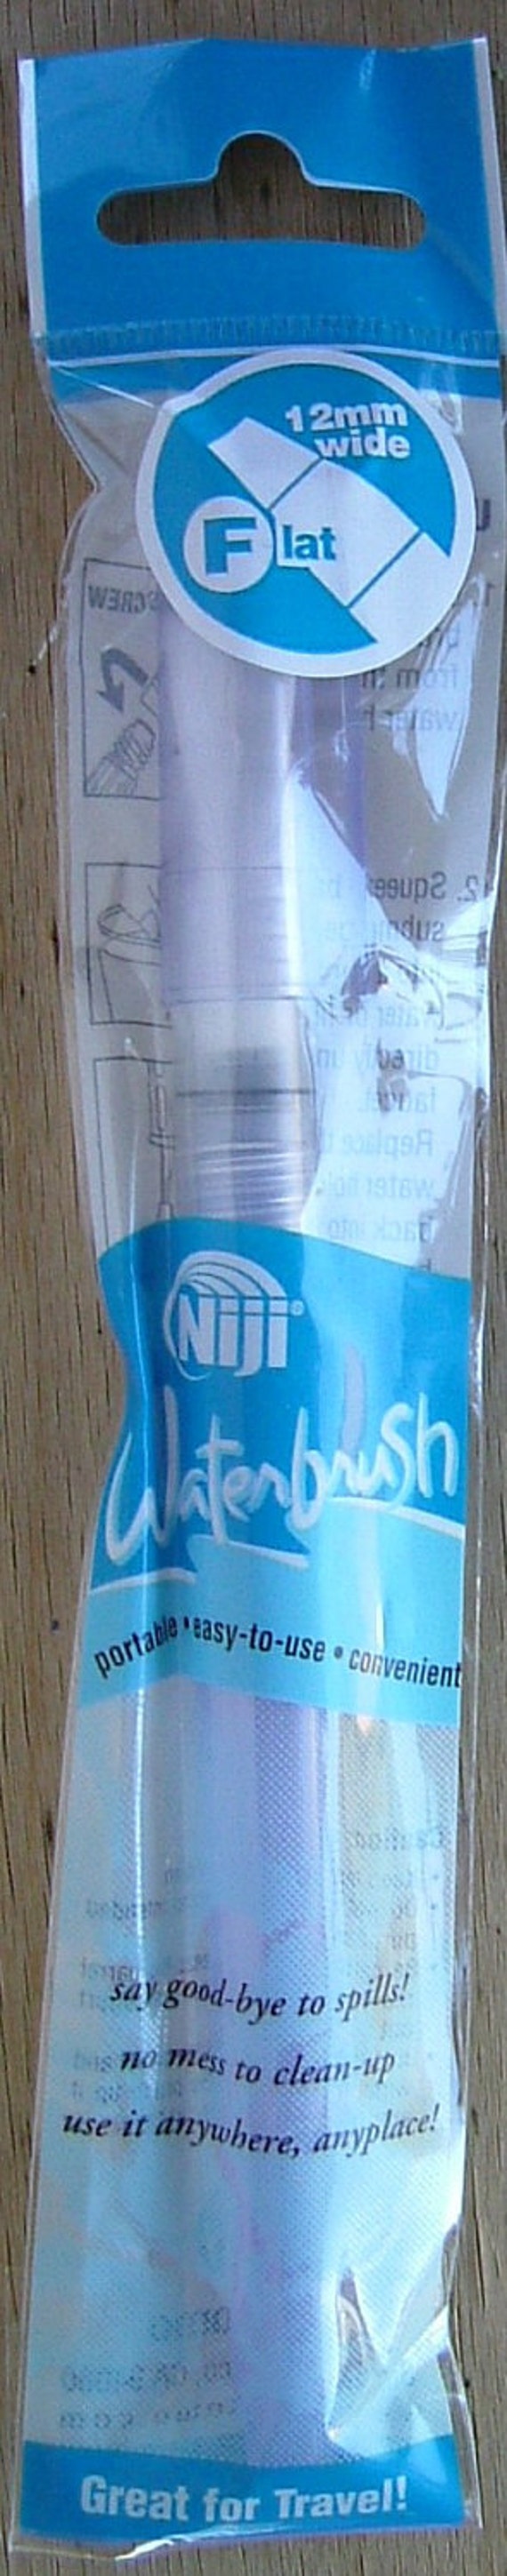 Niji Flat Water Brush